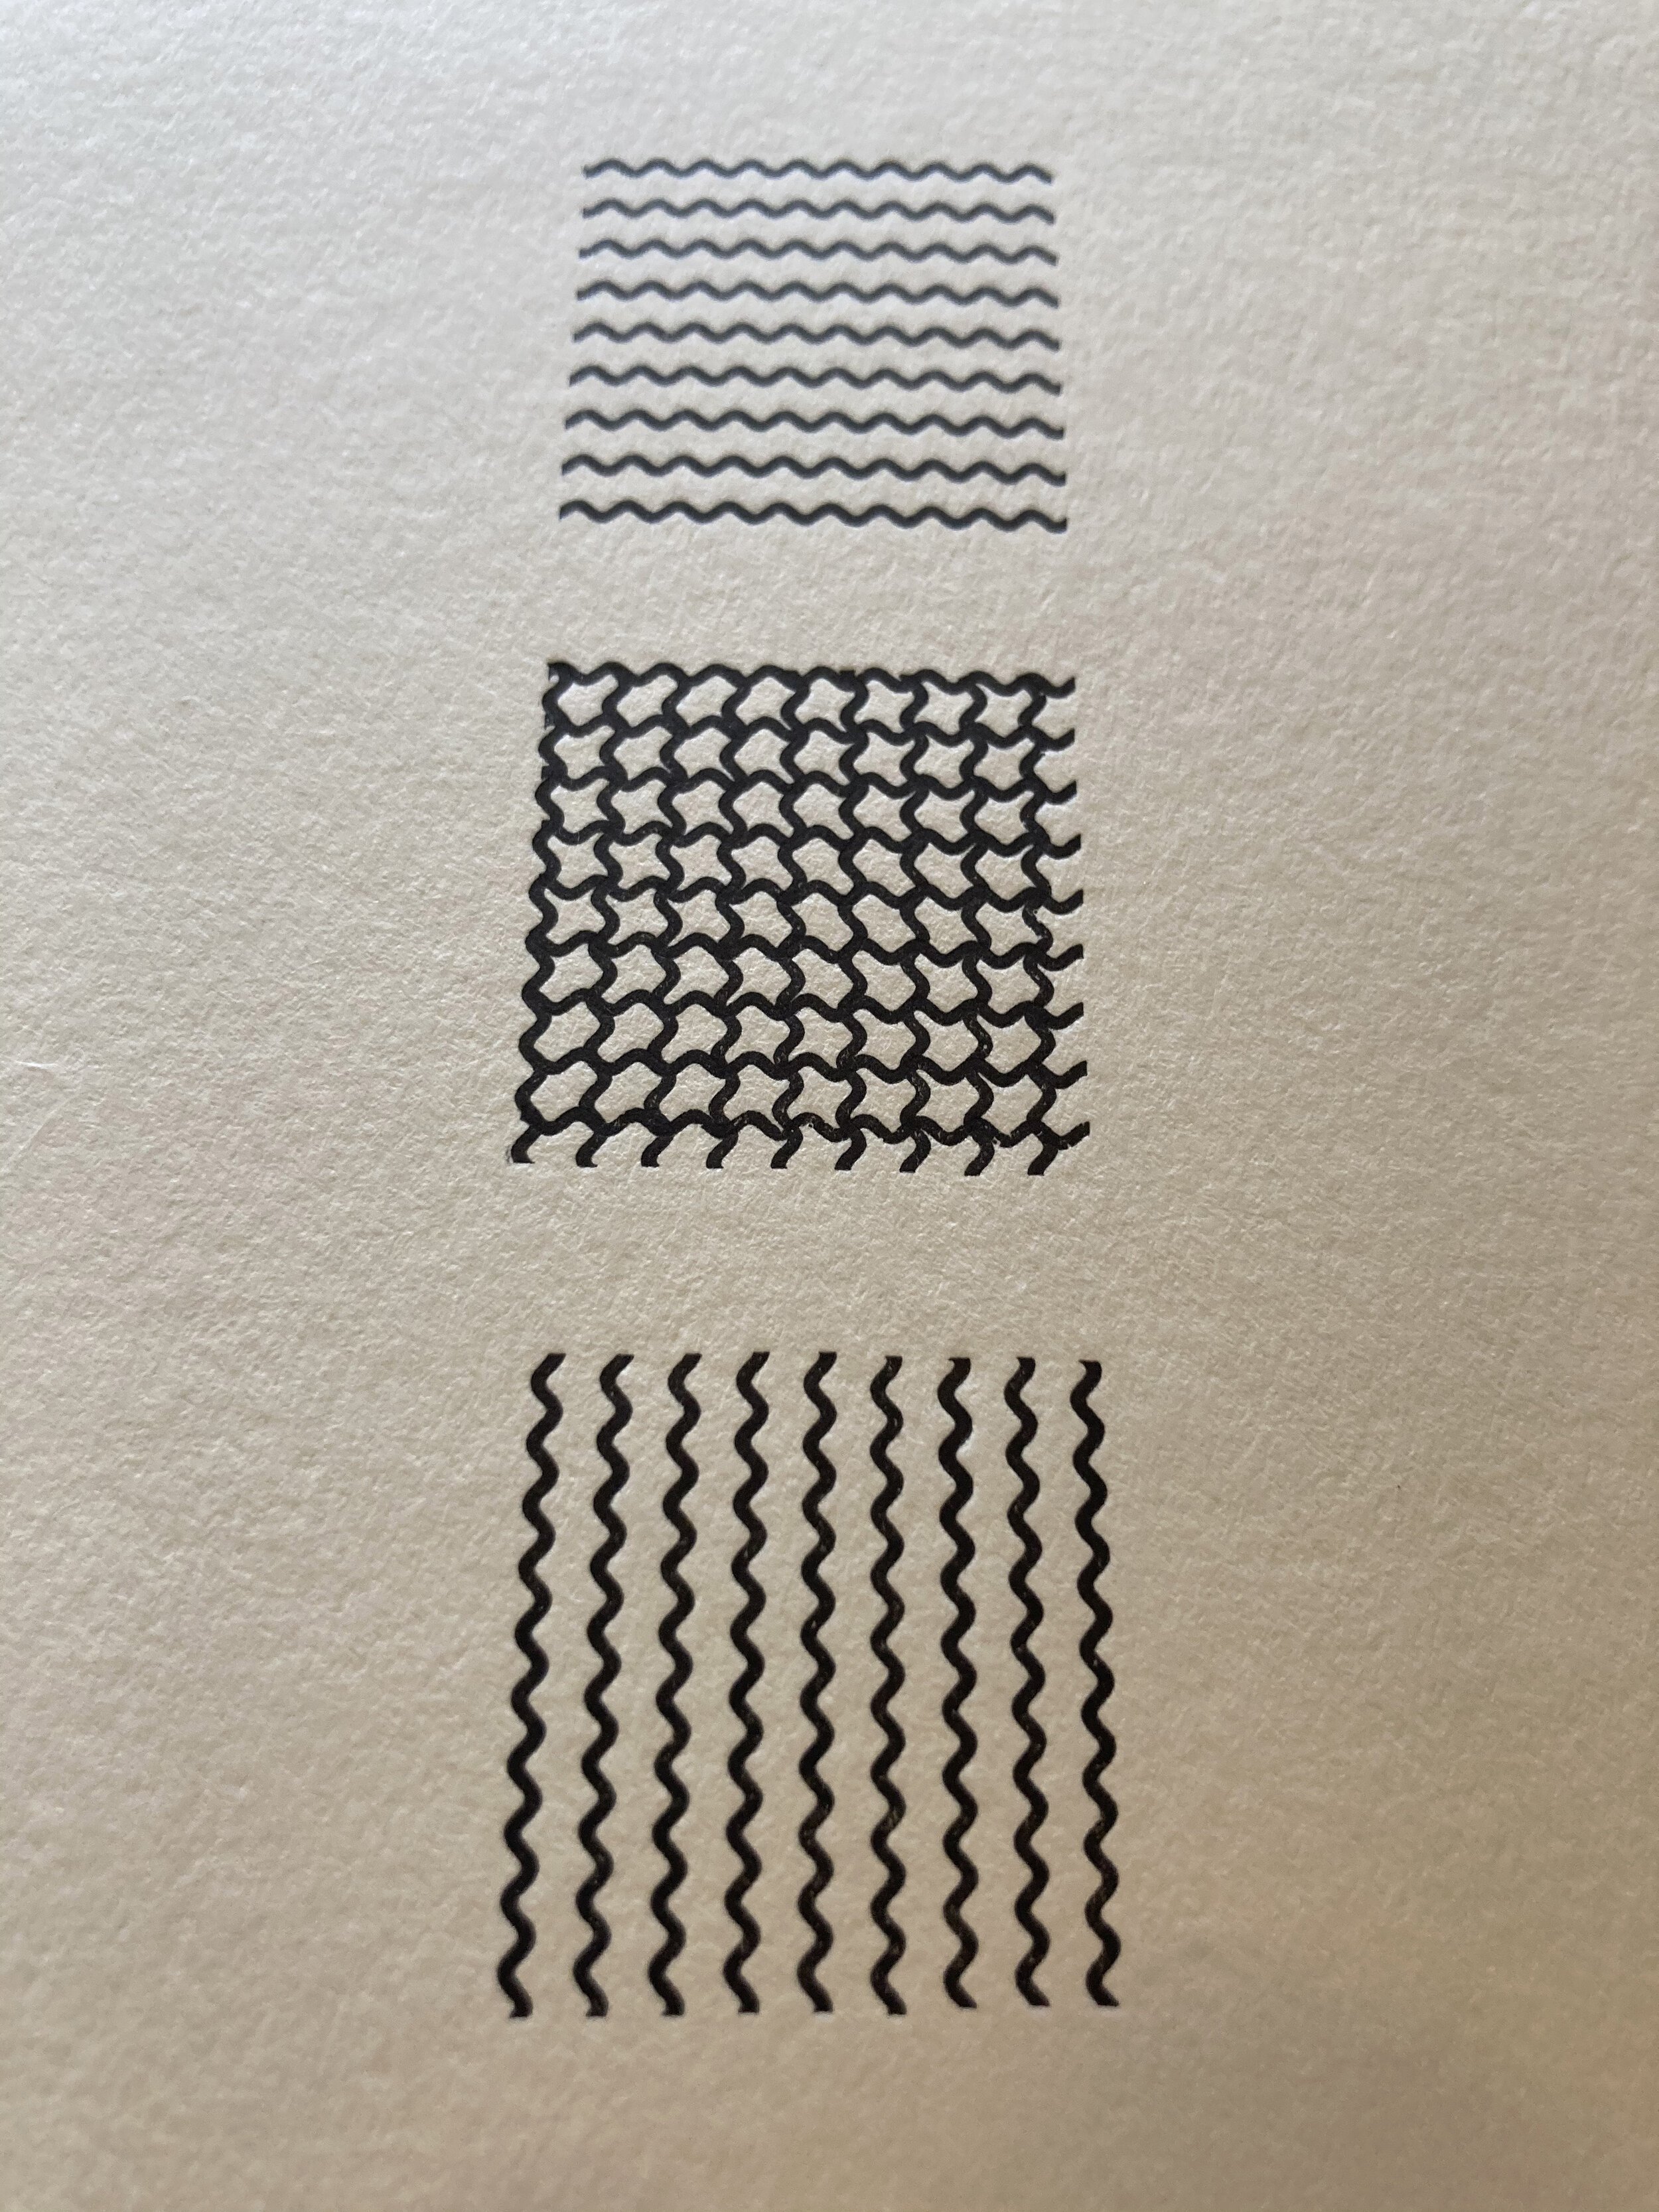 Linotype wave rule 6pt 134B Fiddleink 007 die cut card close.jpg